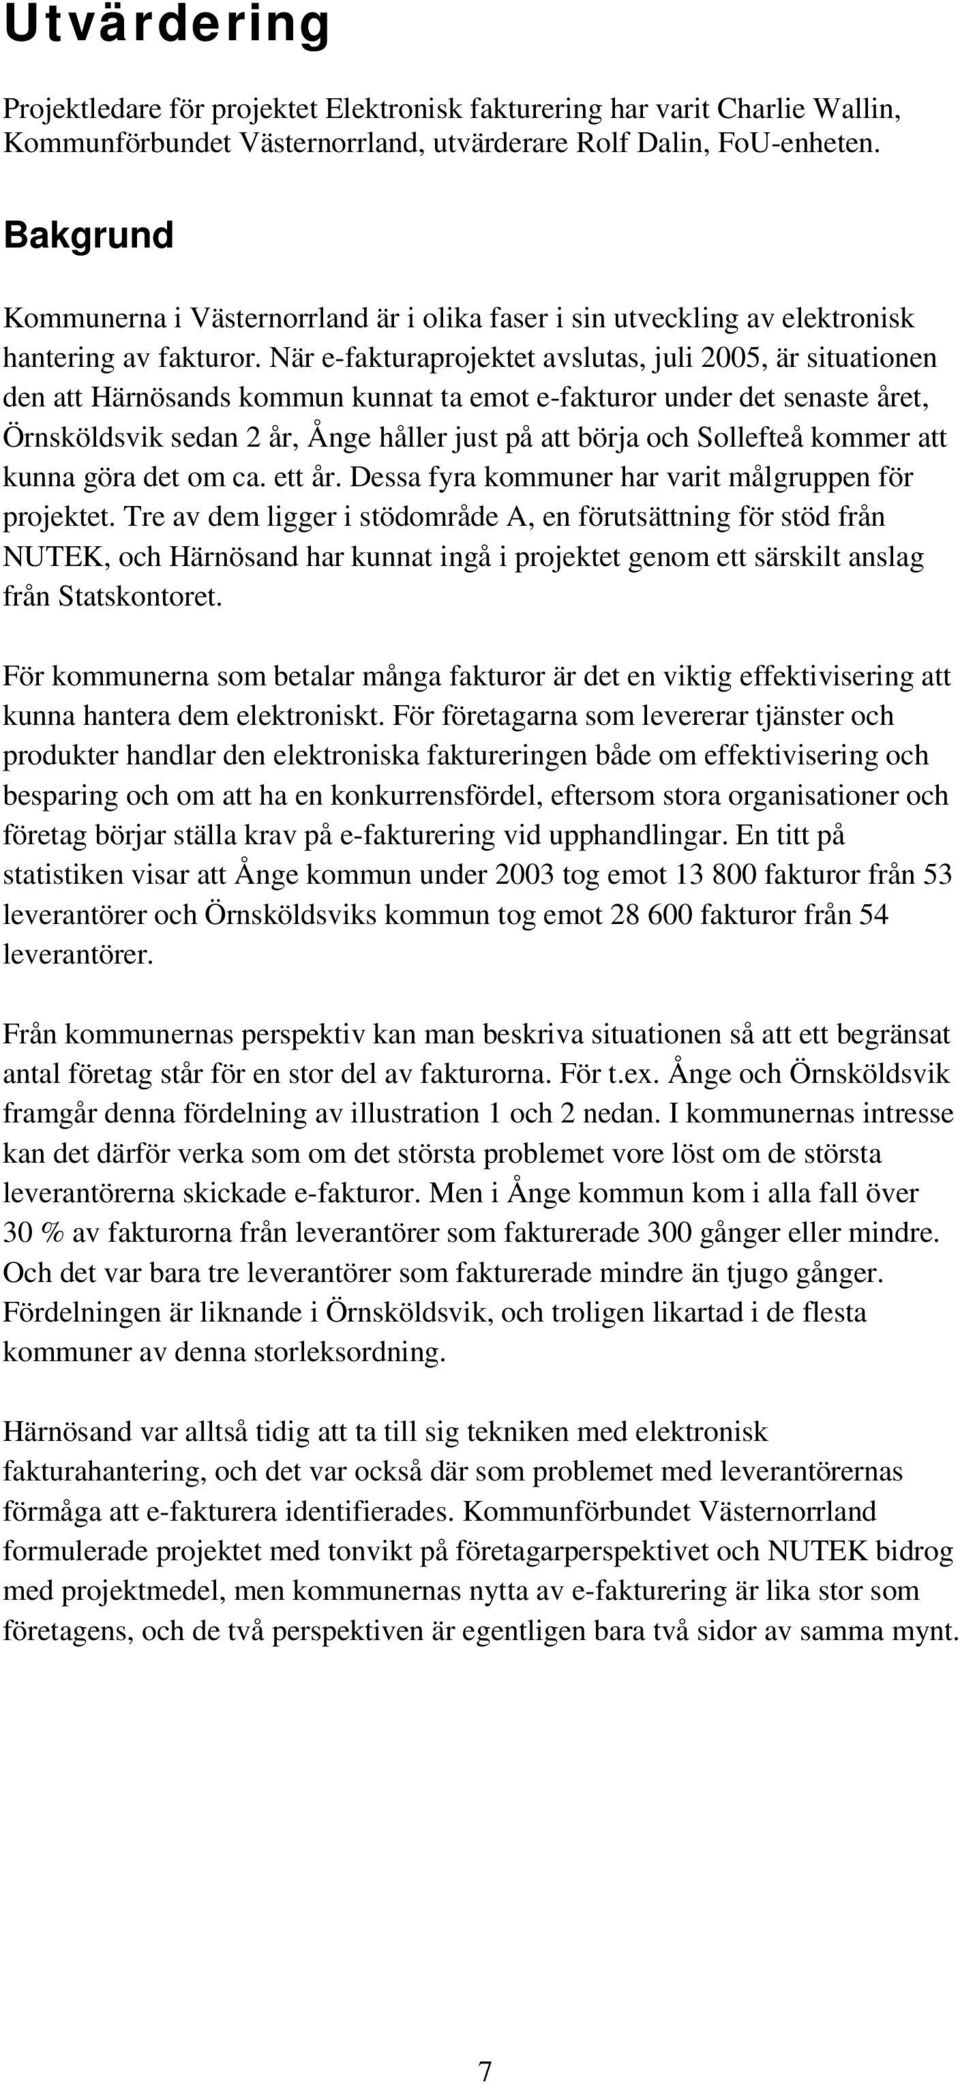 När e-fakturaprojektet avslutas, juli 2005, är situationen den att Härnösands kommun kunnat ta emot e-fakturor under det senaste året, Örnsköldsvik sedan 2 år, Ånge håller just på att börja och